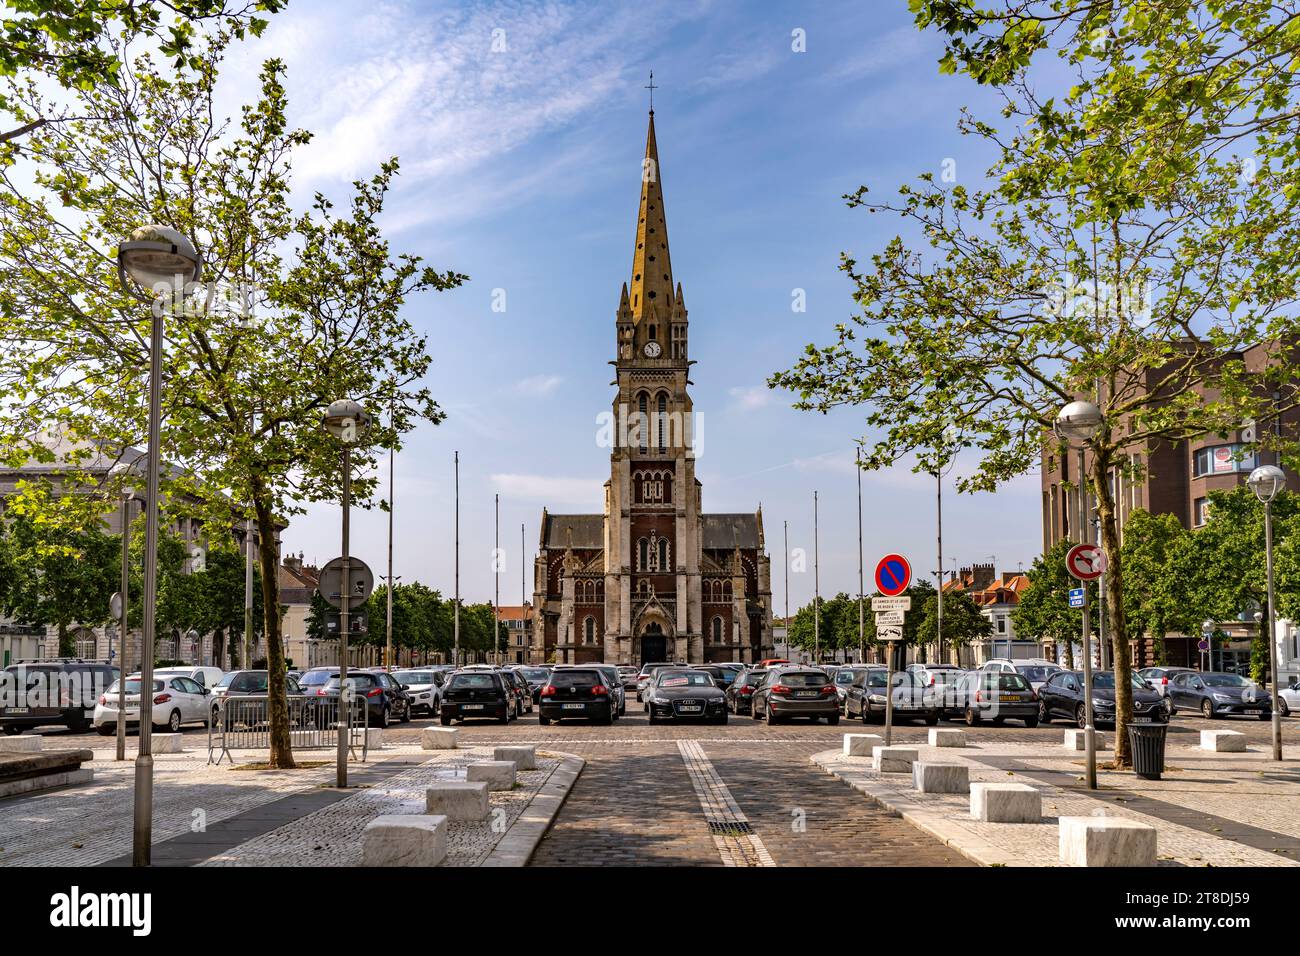 Der Platz Place Crèvecœur und die Kirche Saint Pierre in Calais, Frankreich | Place Crèvecœur und die Kirche Saint-Pierre, Calais, Frankreich Stockfoto